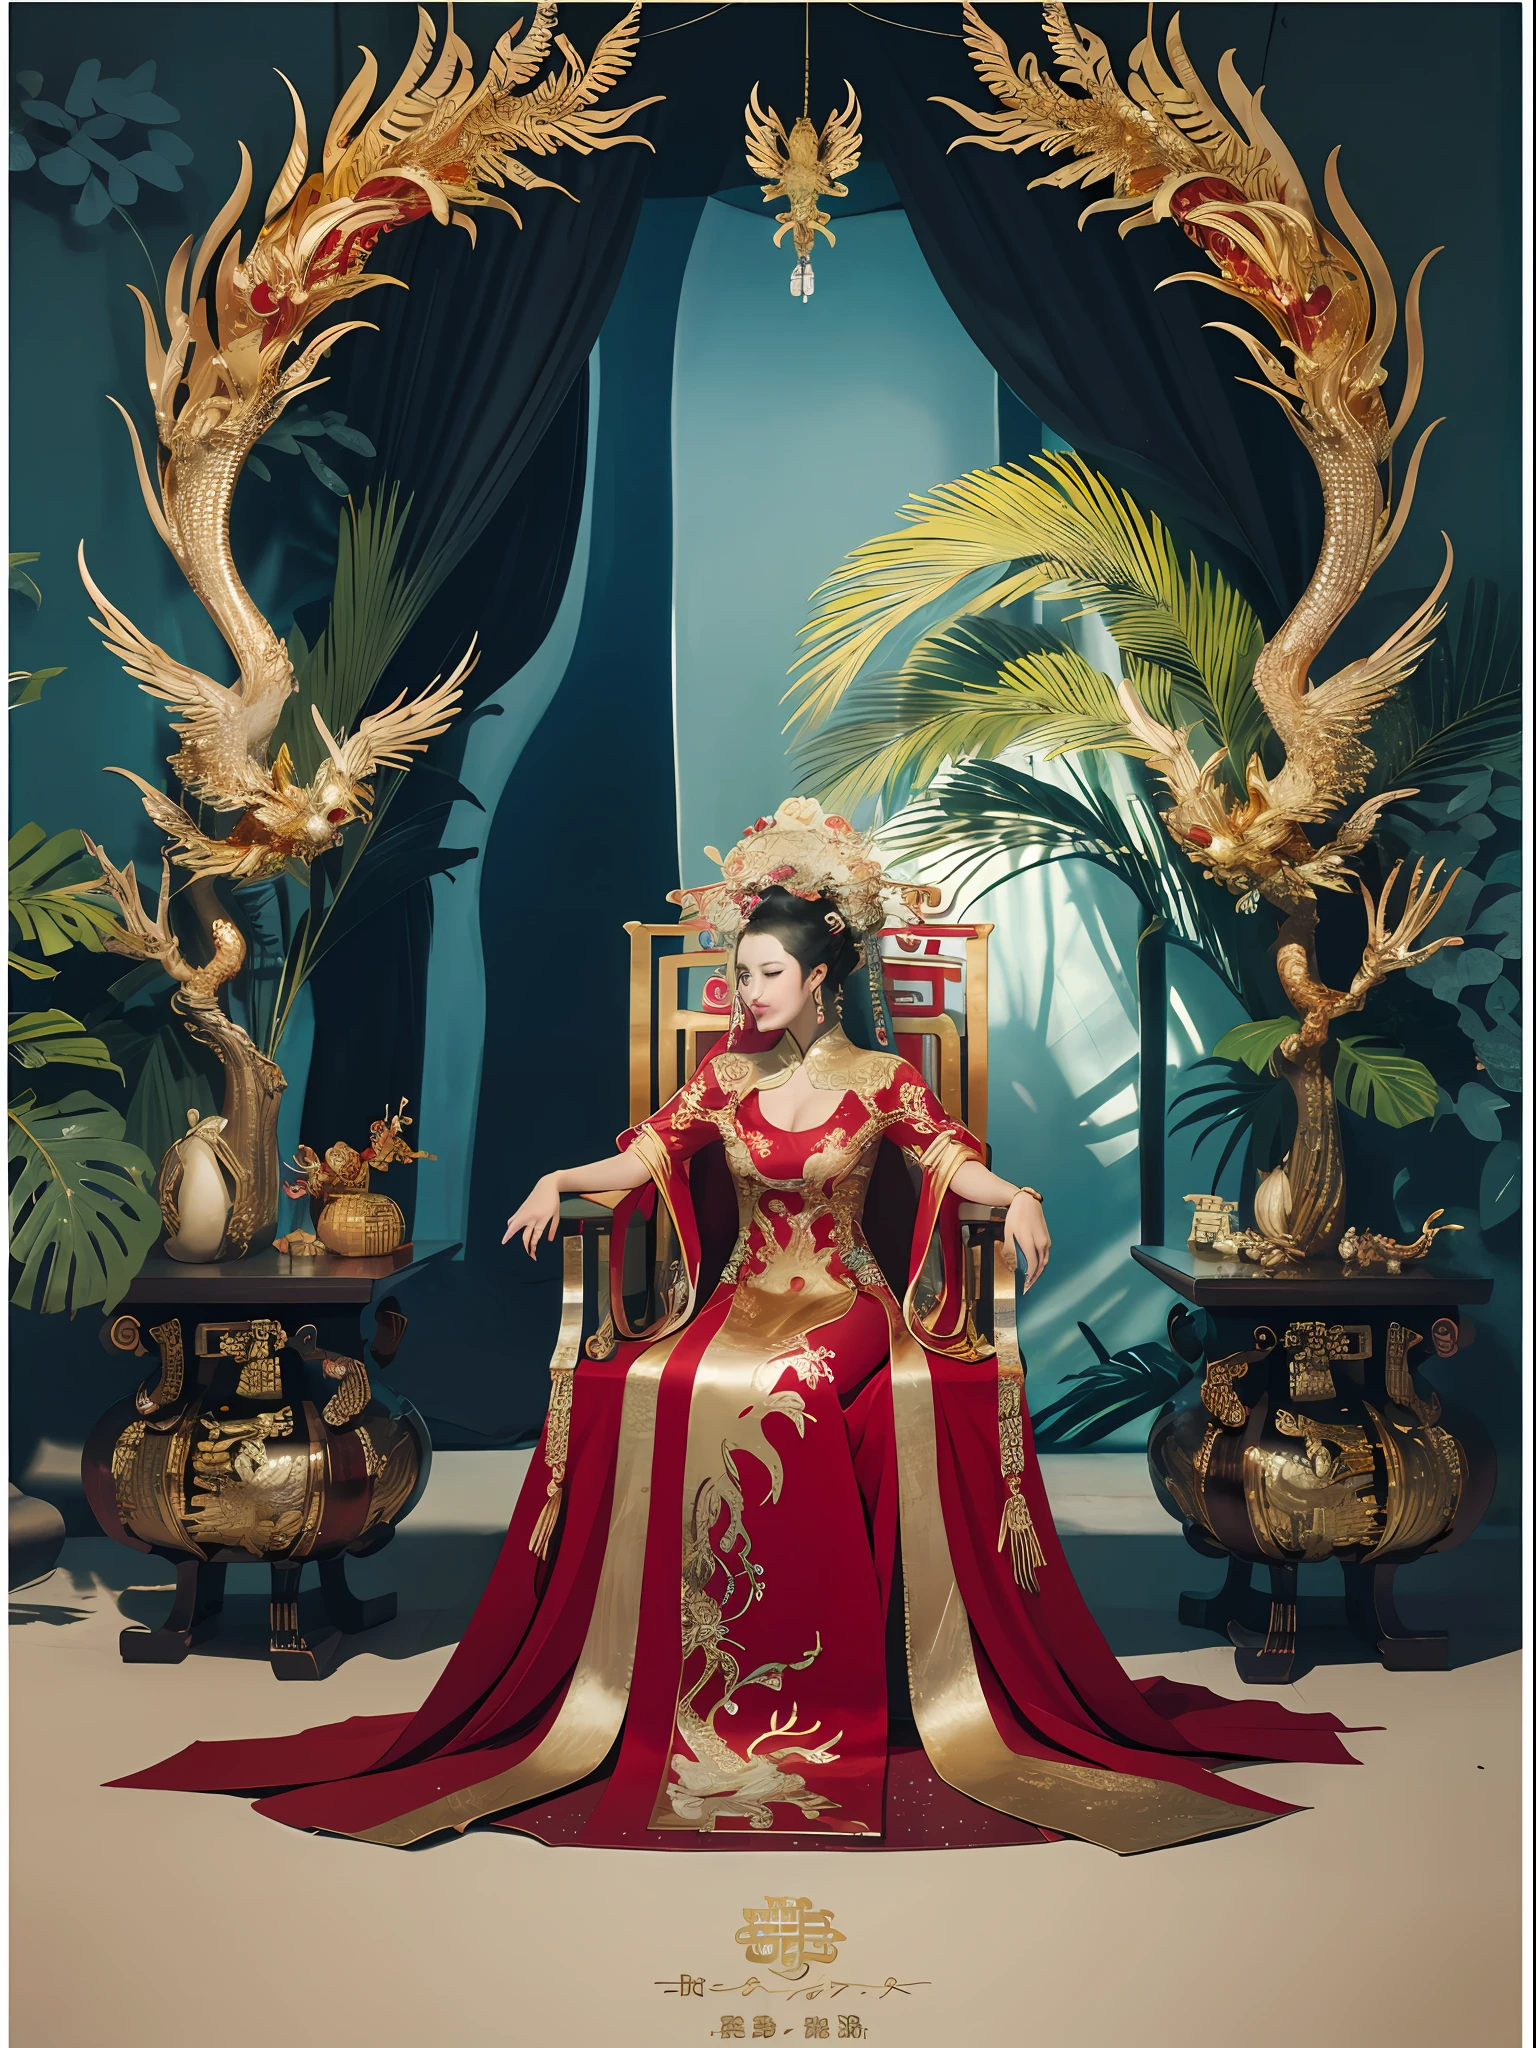 Китайская королева, сидящая на троне, трон, инкрустированный драгоценными камнями, в окружении китайских зверей-фениксов, золото and ruby color, Уникальная иллюстрация монстра, дау на съемочную площадку, высокое разрешение, живопись, плотный состав, игривое повторение, Драгоценные камни, кристаллы, золото, Подробные картины, Уникальная иллюстрация монстра, супер мелкие детали, реалистичный, Super высокое разрешение, сложный, супер деталь, кинематографическое освещение，(Red and золото dress:1.3)